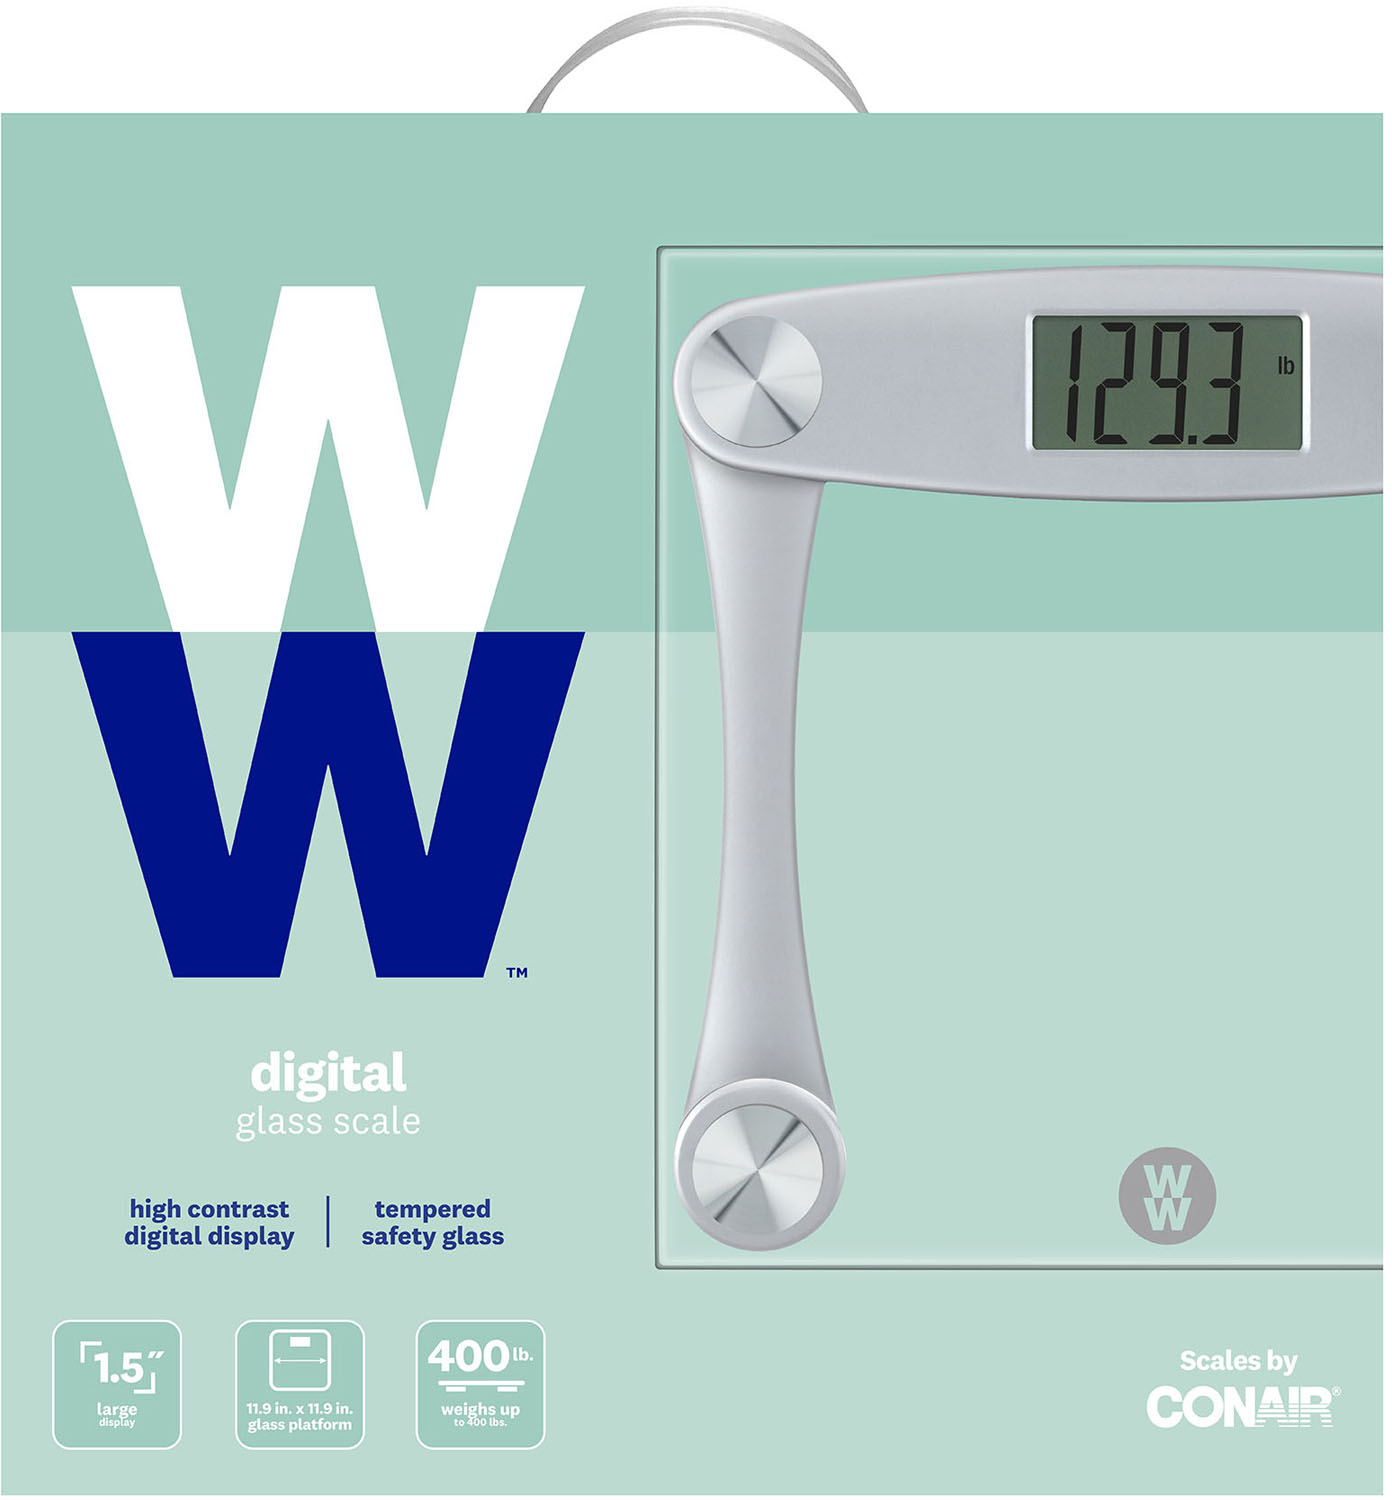 Conair Weight Watchers Digital Glass Scale #WW42D WW42R Reviews –